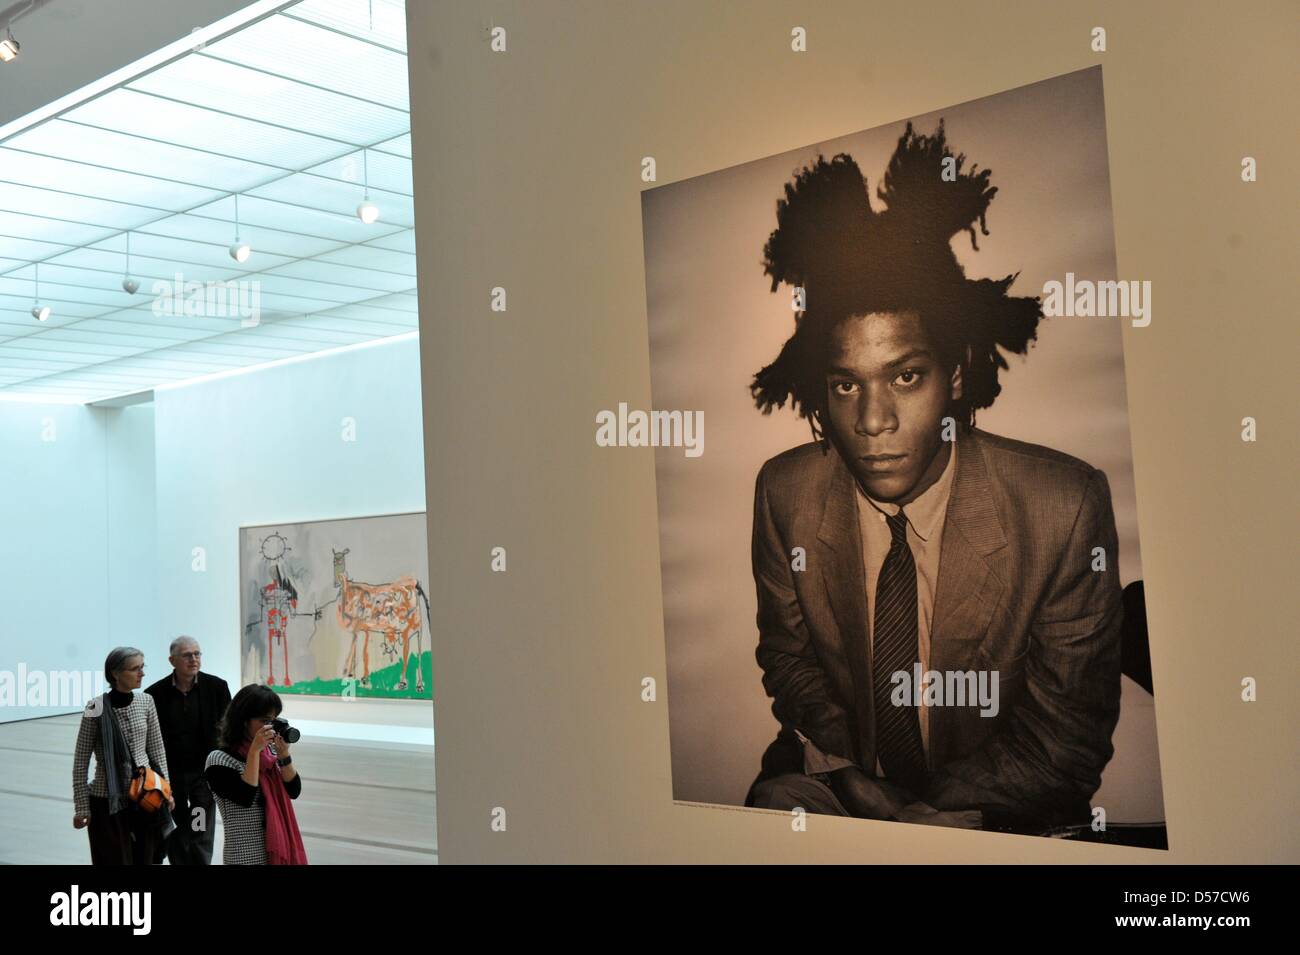 Besucher von der Presse-Preview der Ausstellung '' Basquiat'' vor einem Foto des Künstlers Jean-Michel Basquiaz am Museum der Fondation Beyeler in Riehen bei Basel, Schweiz, 7. Mai 2010 stehen. Auf der Occaision des 50. Geburtstages des 1988 verstorbenen Künstlers Jean-Michel Basquiet widmet die Fondation Beyeler eine große Retrospektive mit über 100 Gemälde, Papierarbeiten und ob Stockfoto